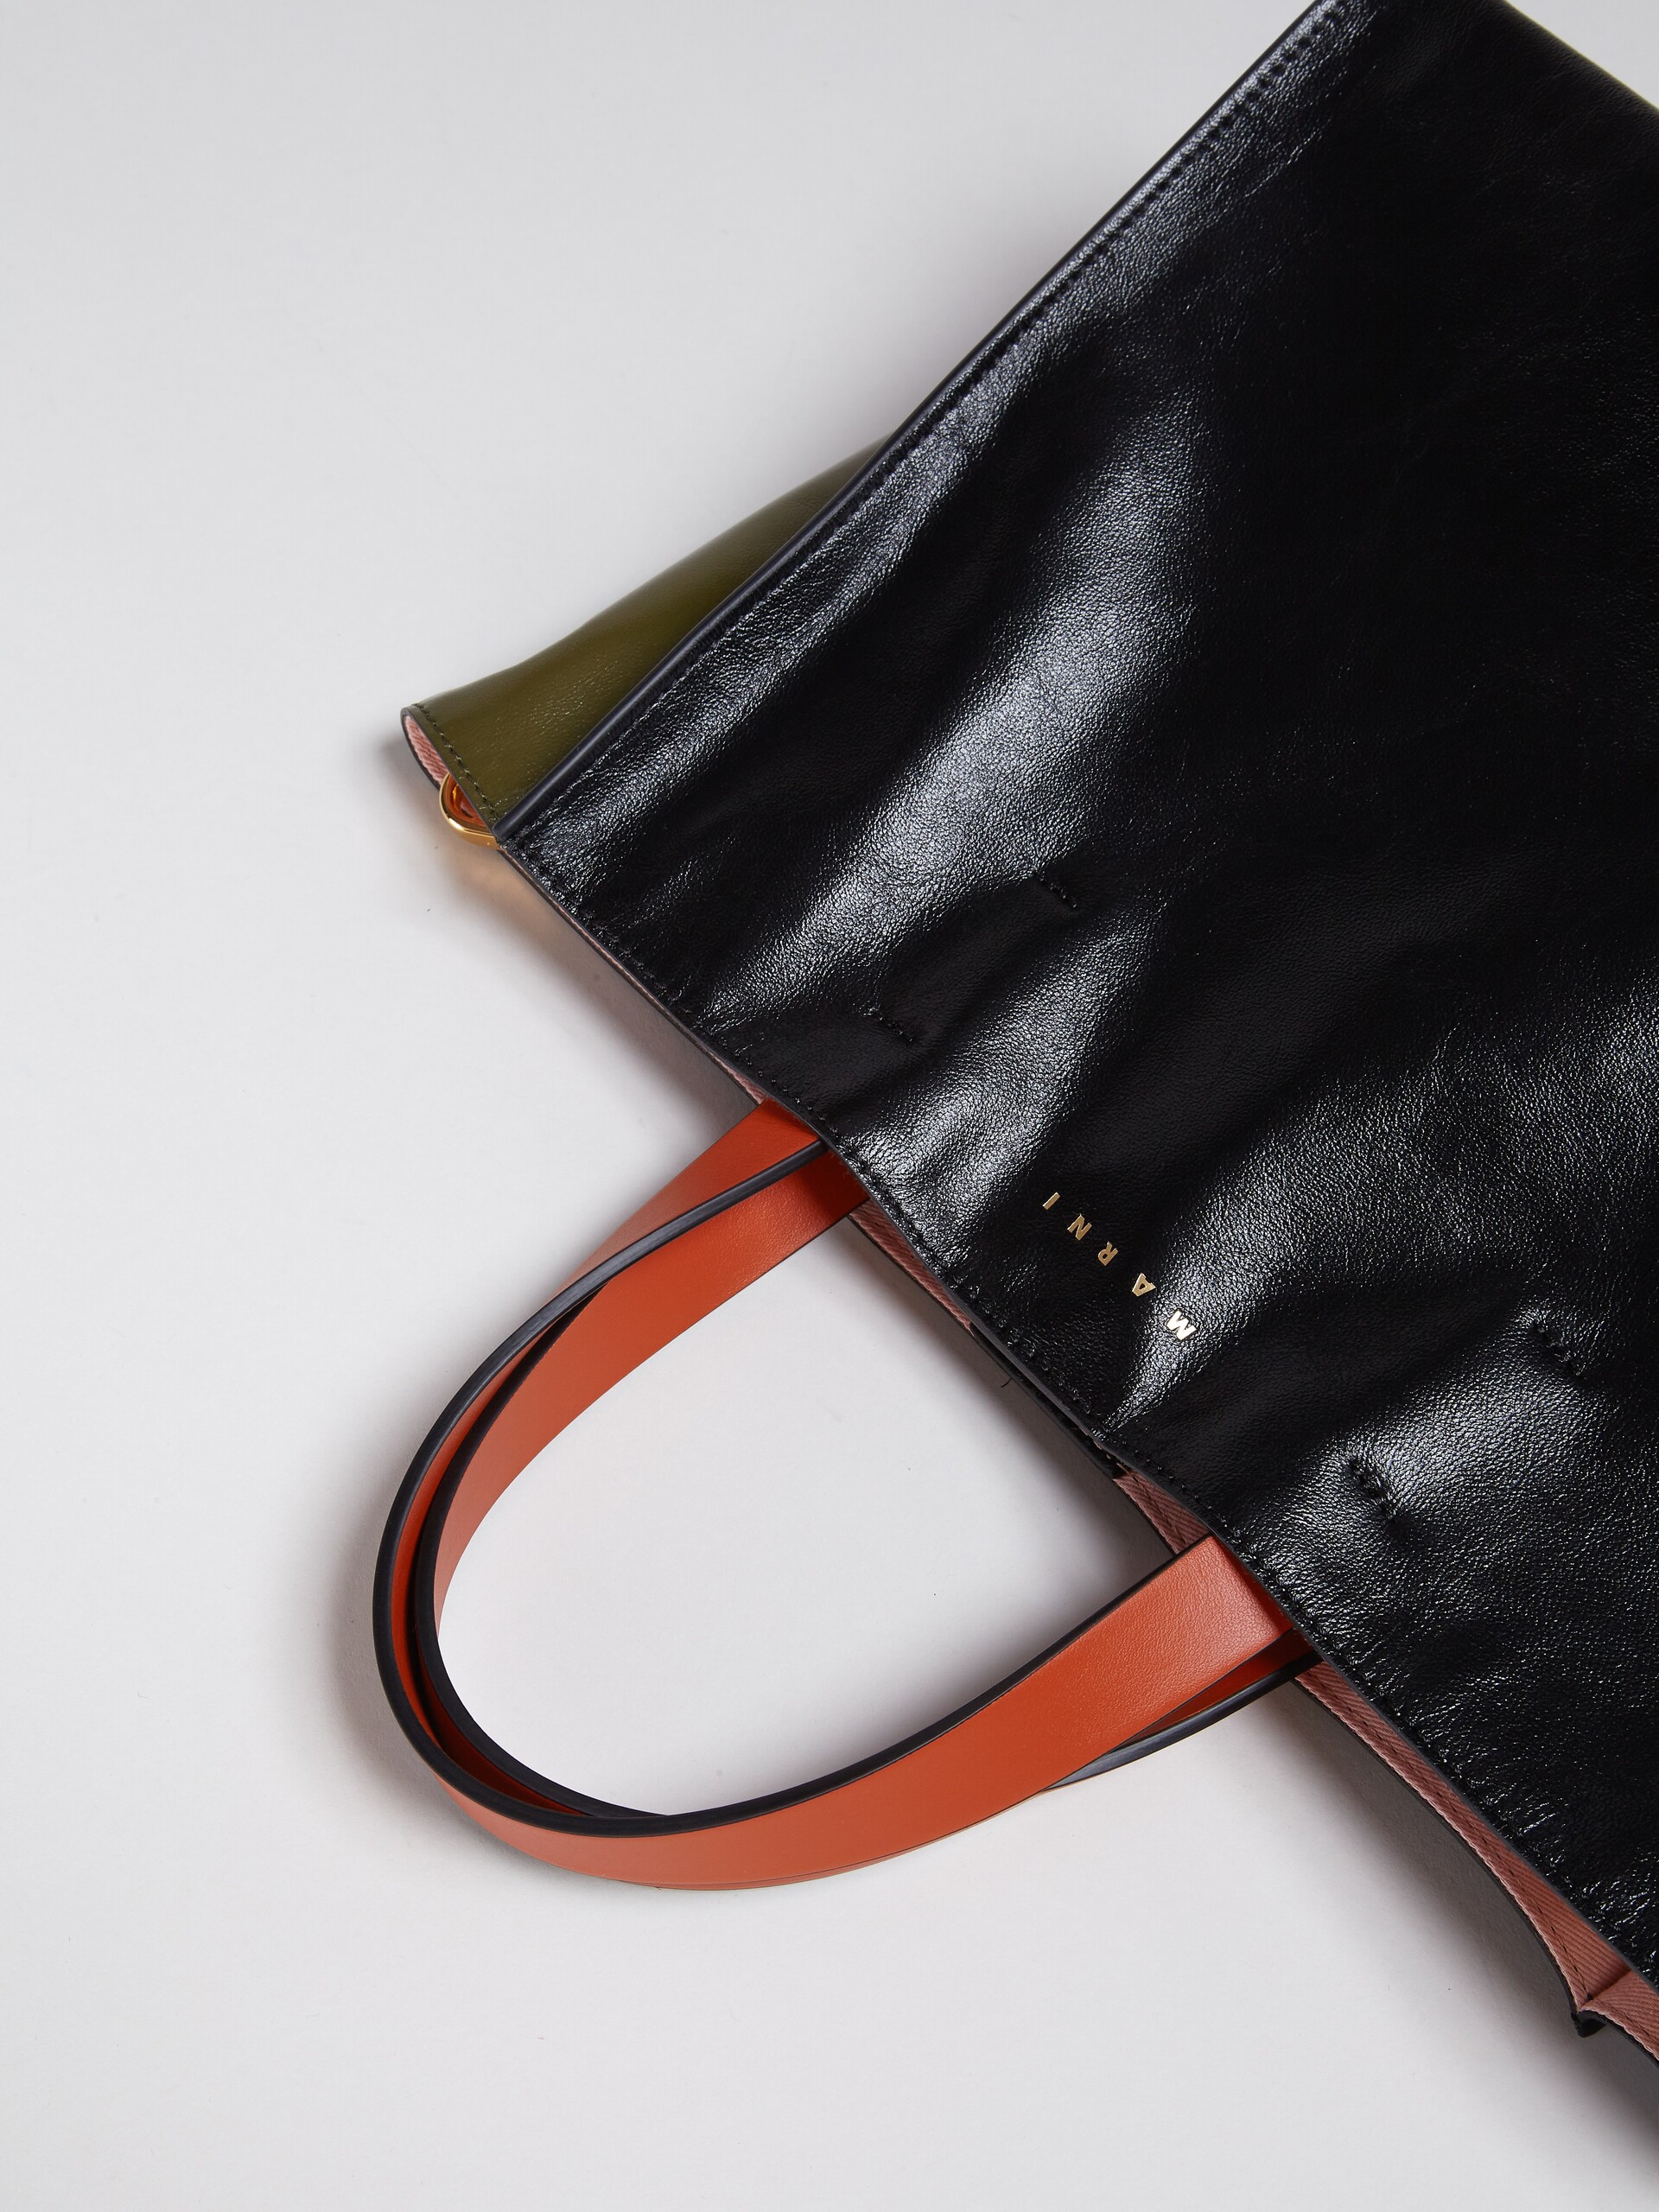 Petit sac MUSEO SOFT en cuir noir, vert et orange - Sacs cabas - Image 4